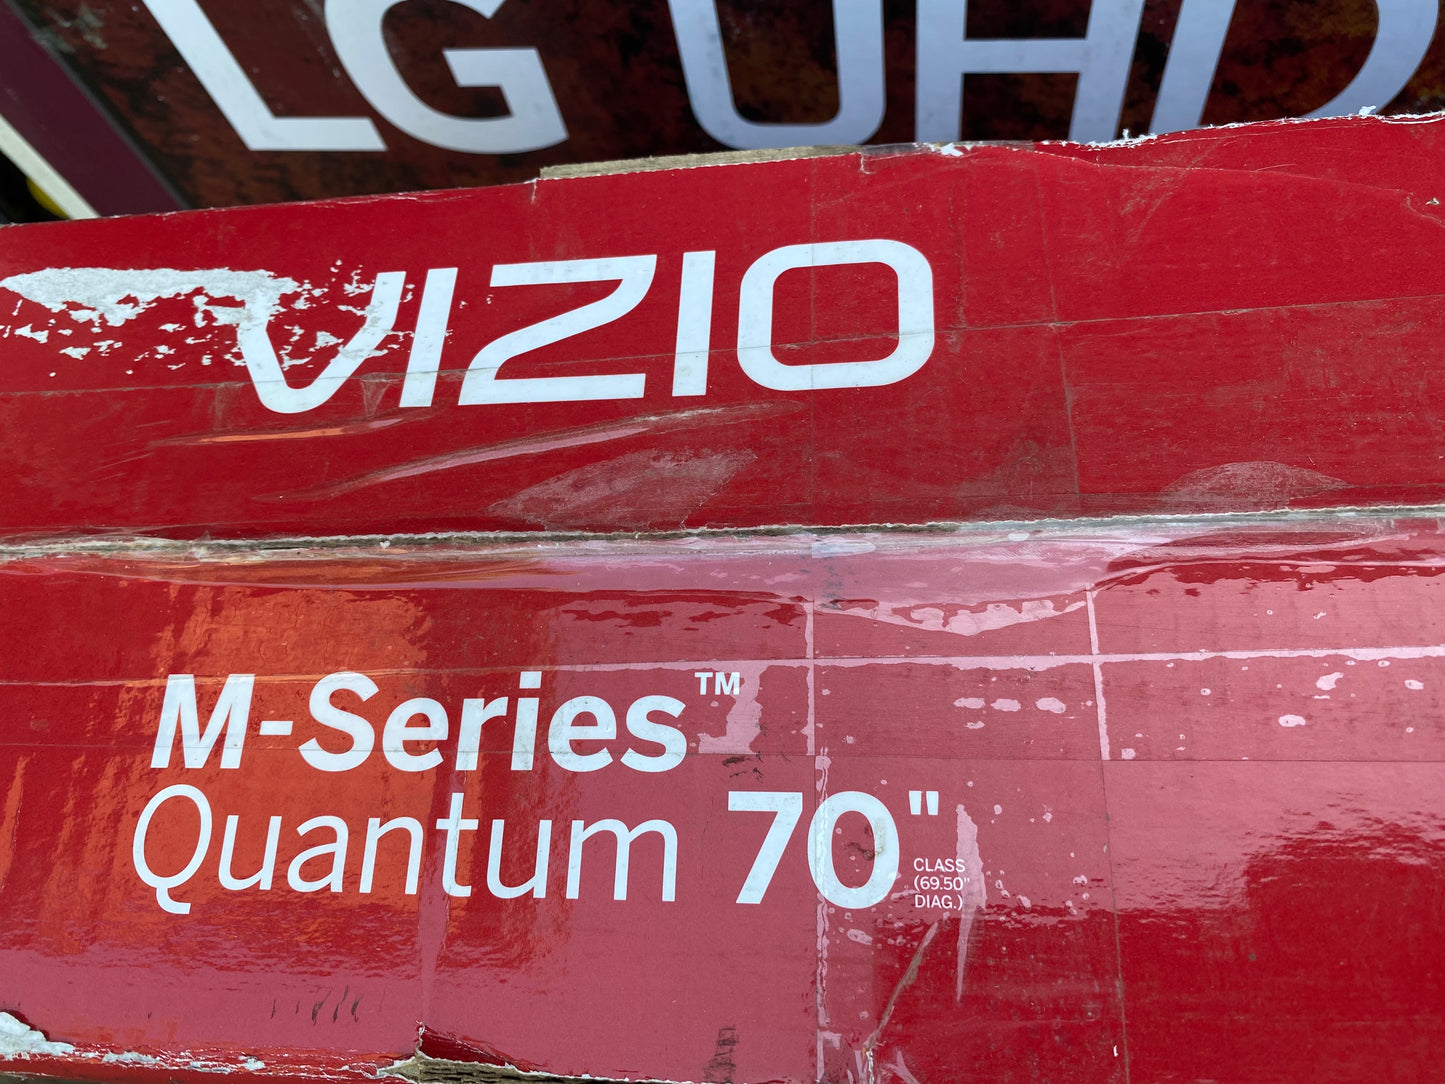 Vizio M-Series Quantum 70" TV